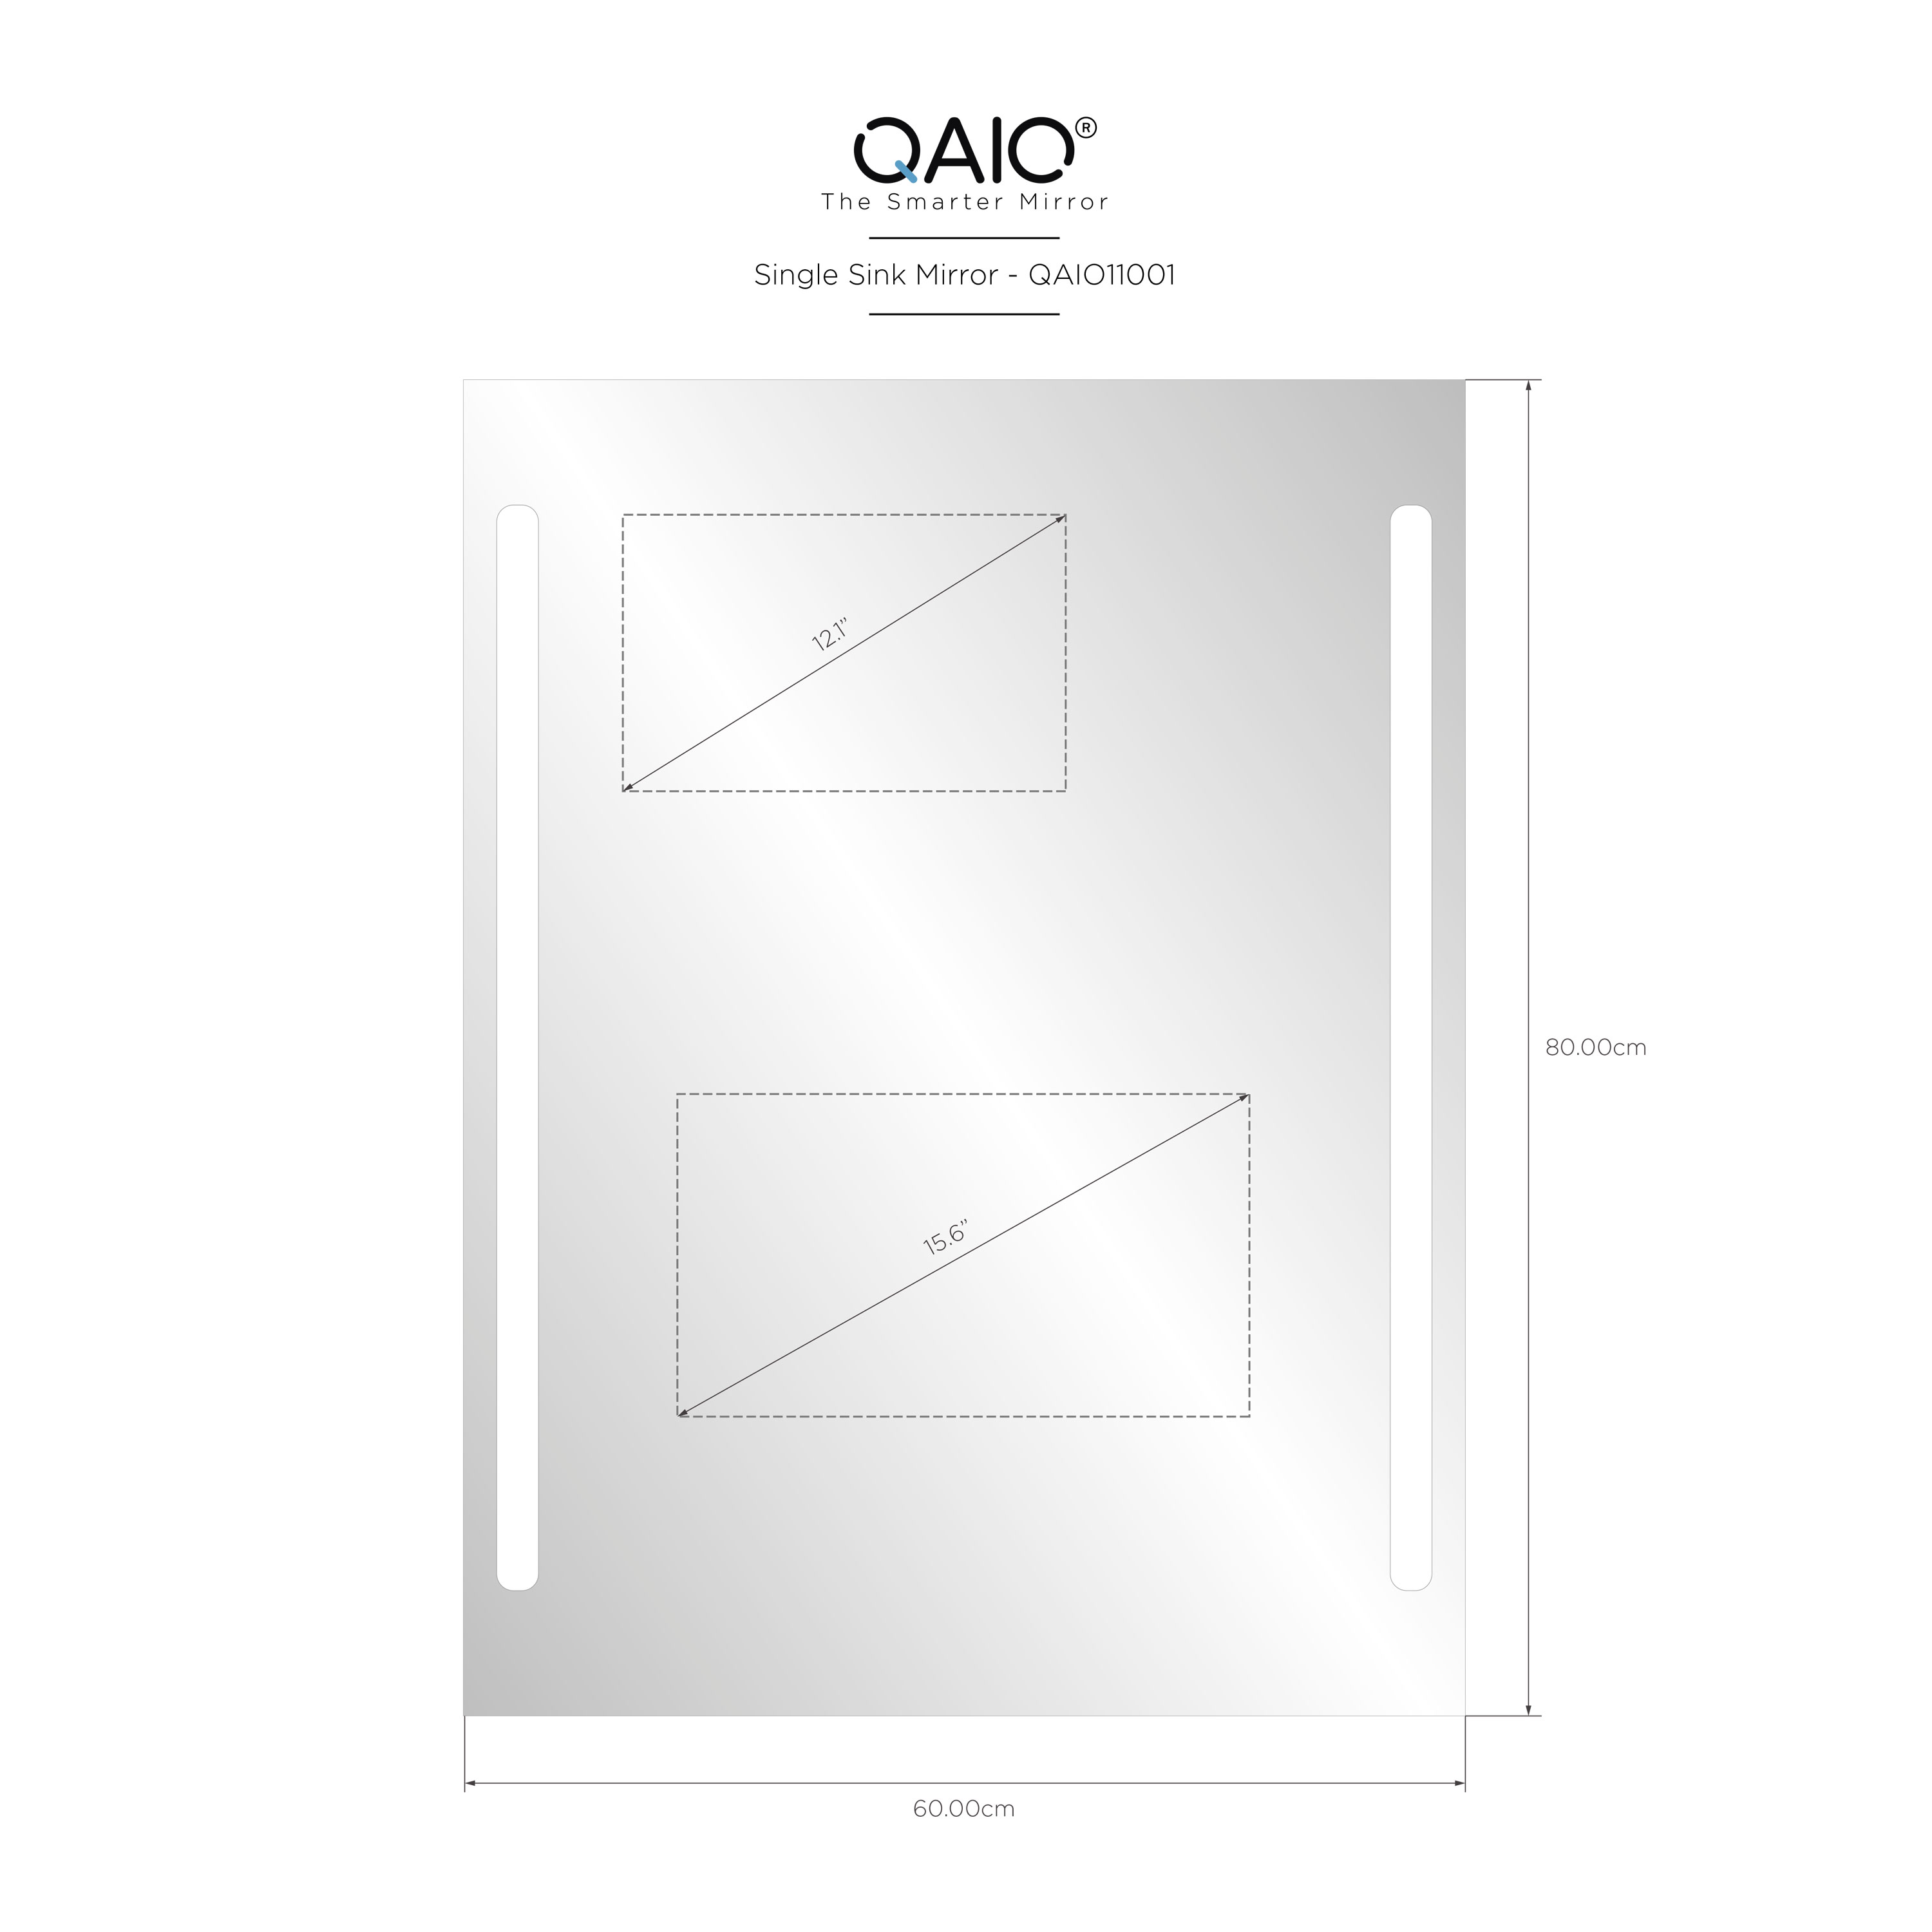 QAIO 60cm width x 80cm height, with 15.6” TV (QAIO11001)